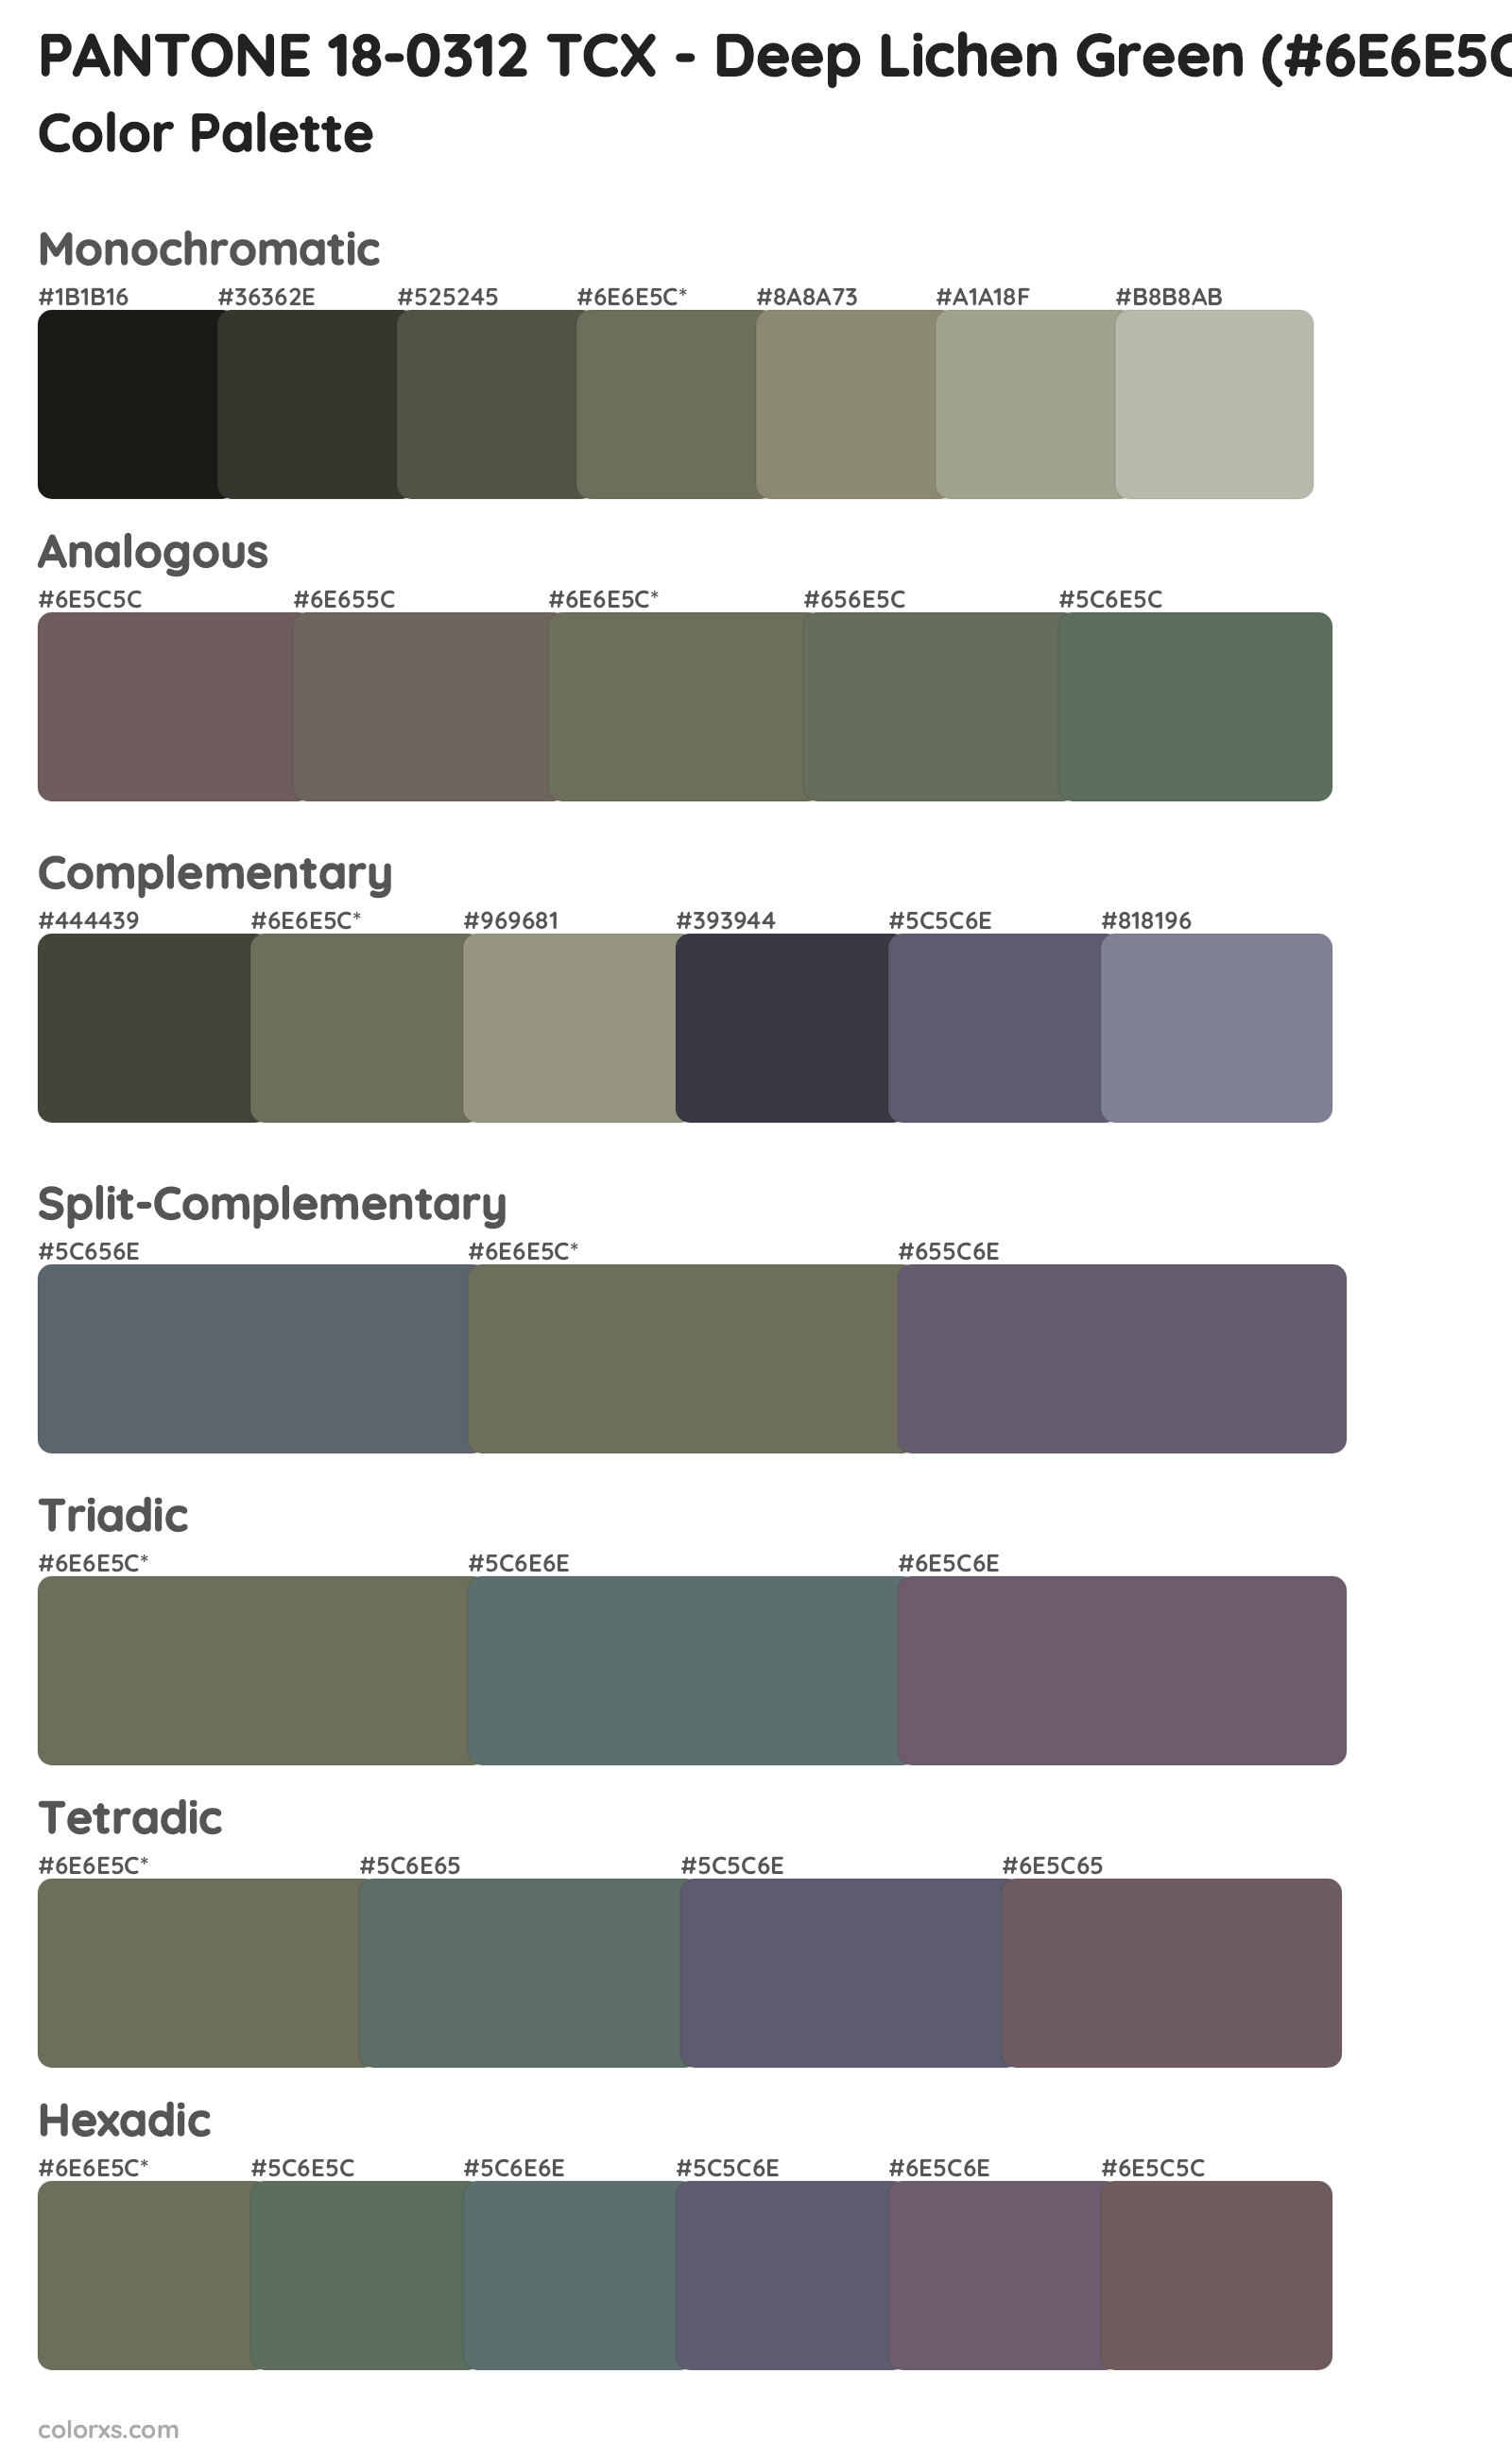 PANTONE 18-0312 TCX - Deep Lichen Green Color Scheme Palettes